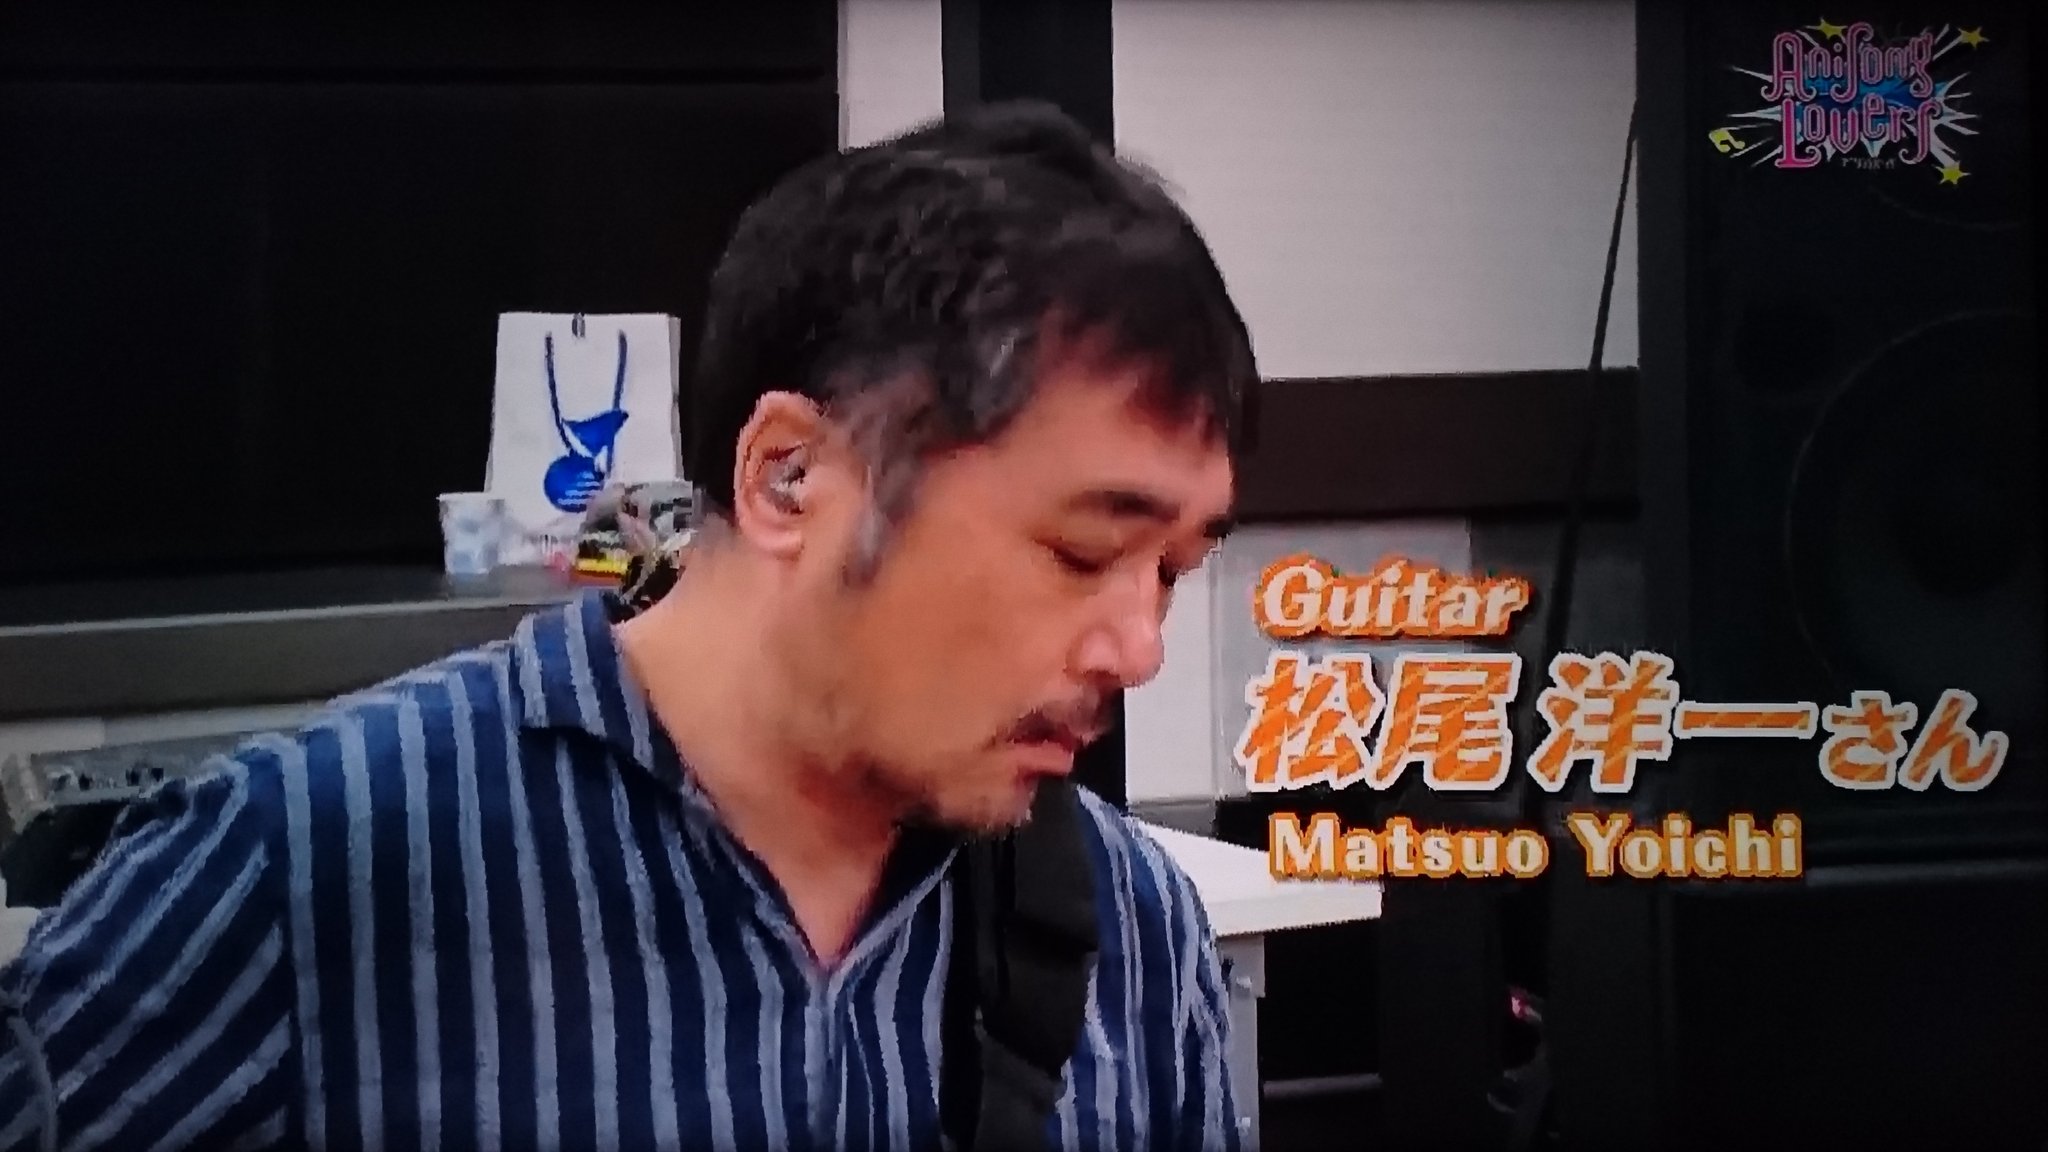 松尾洋一は人気のギタリスト